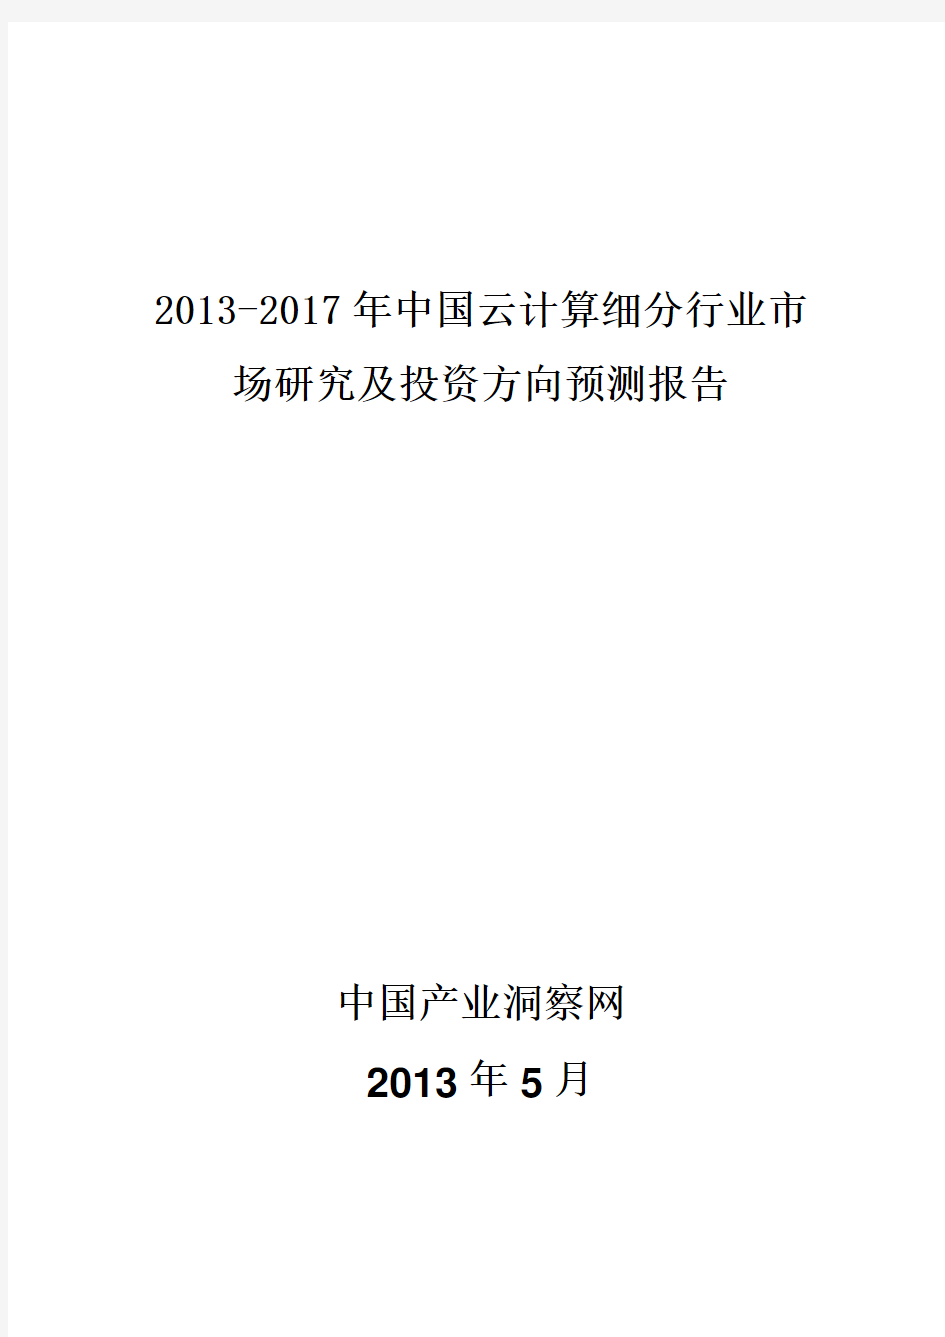 2013-2017年中国云计算细分市场需求调研与投资战略分析报告_中国产业洞察网